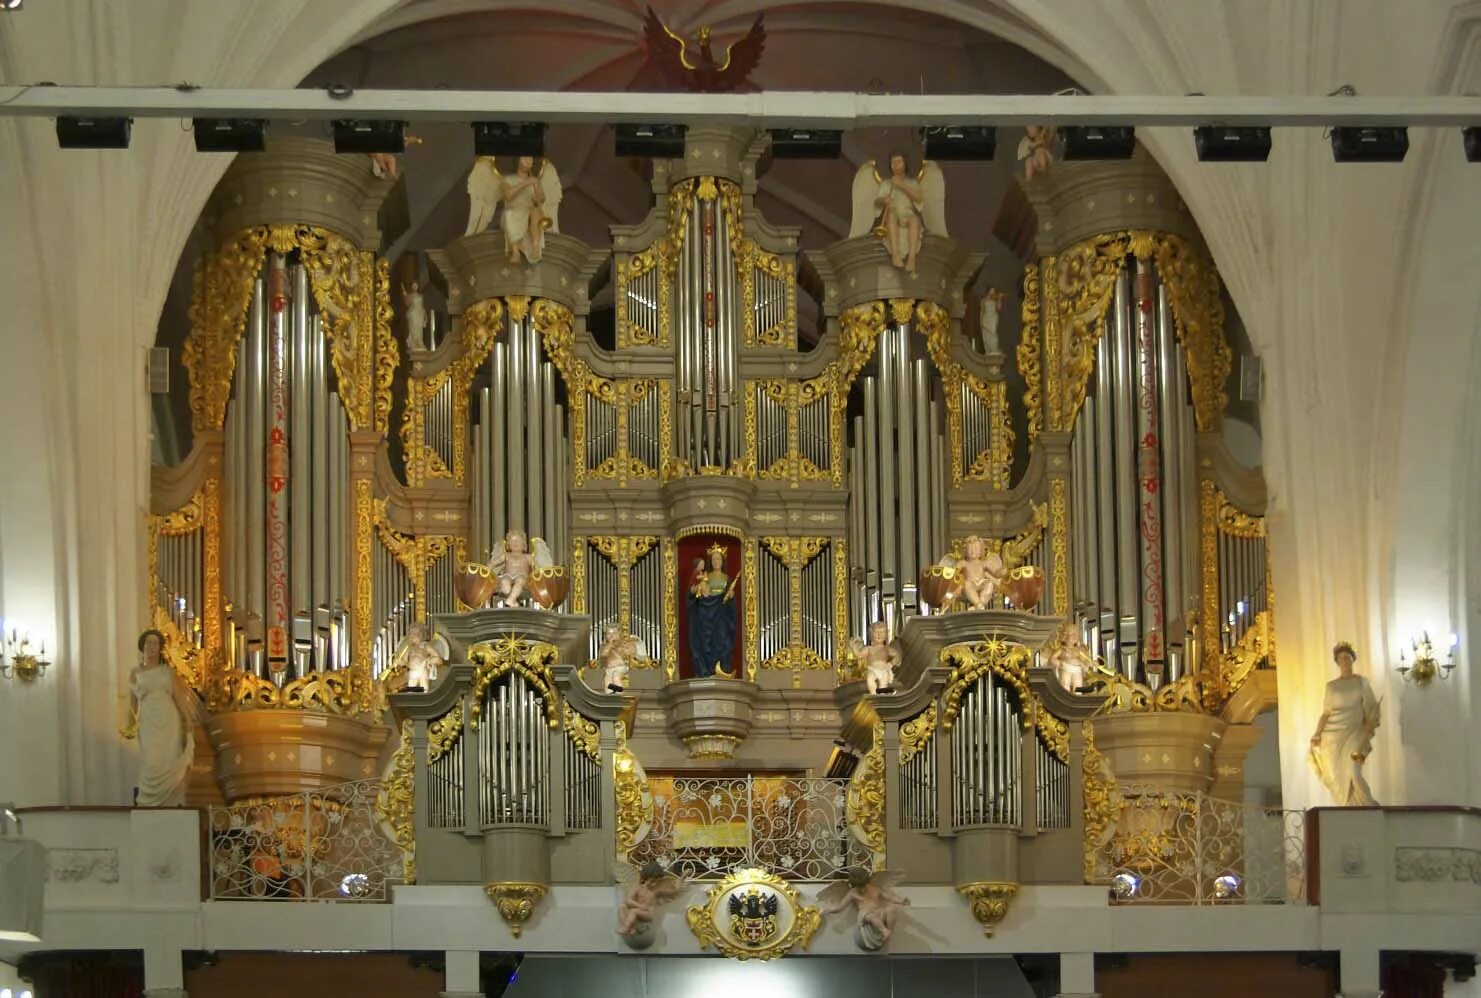 Орган в калининграде купить билет. Калининград органный концерт в кафедральном соборе.